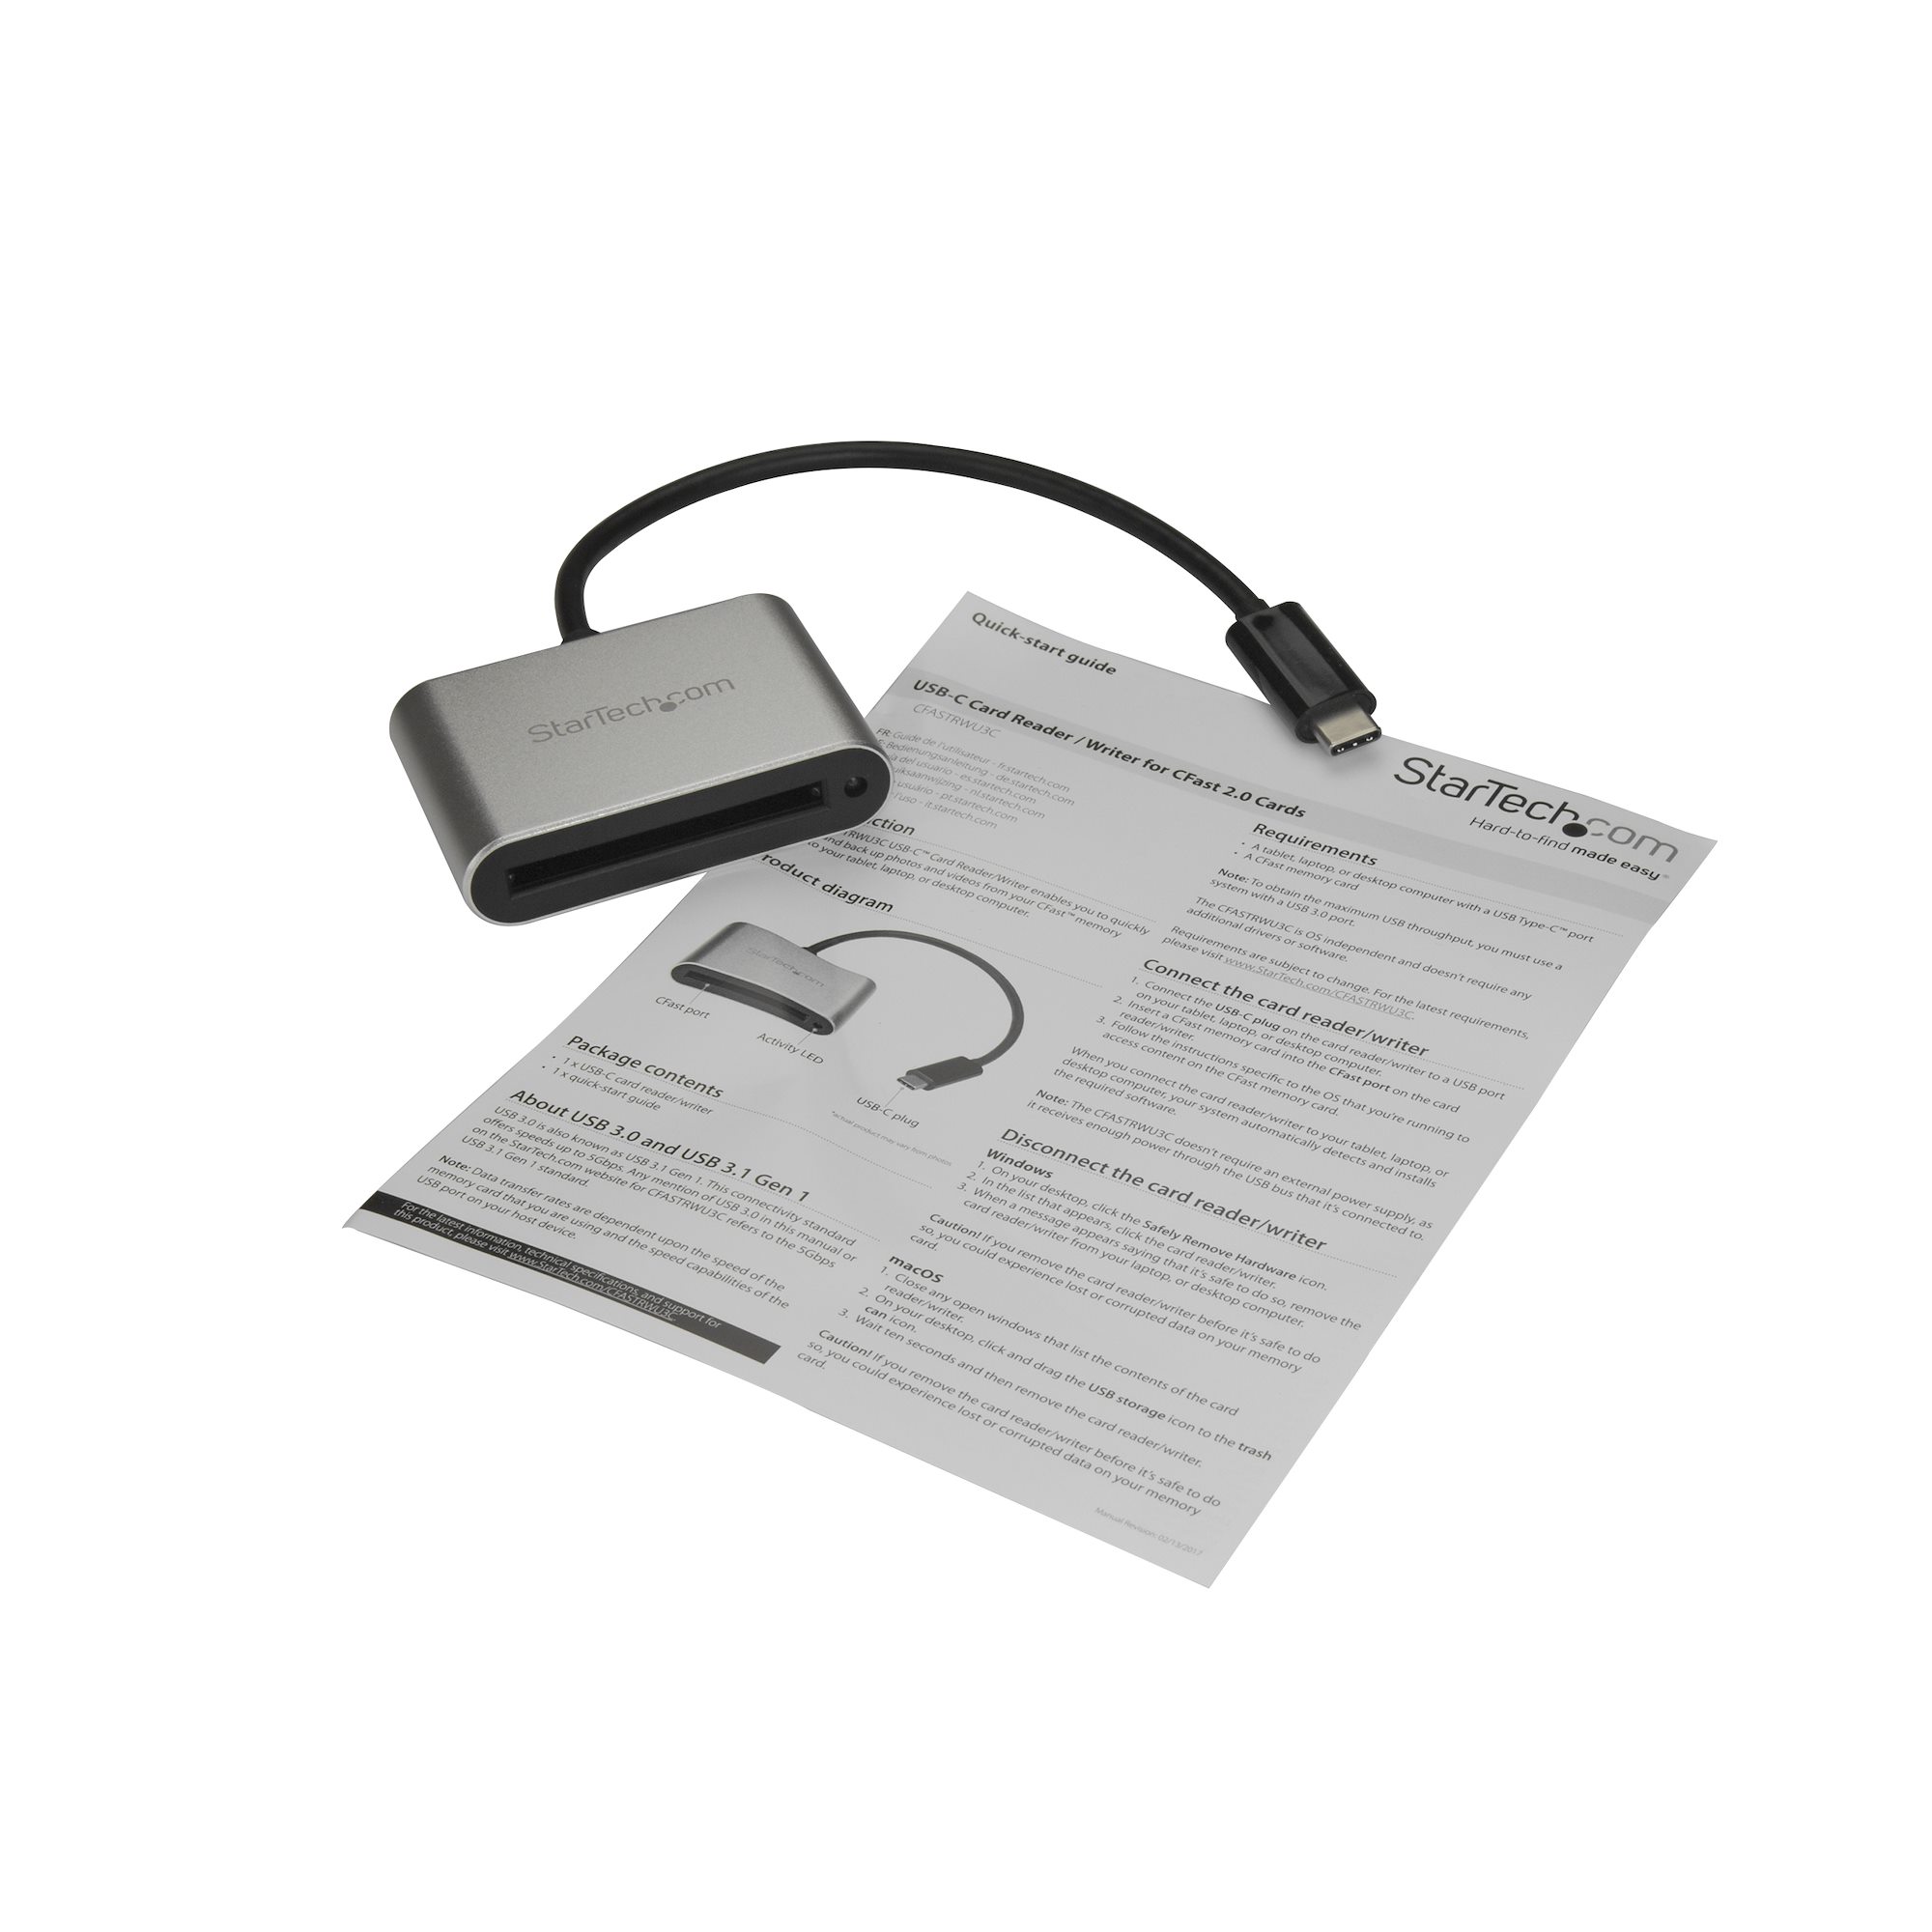 CFast 2.0 カード対応リーダーライター(USB Type-C接続) - USBカードリーダー | 日本